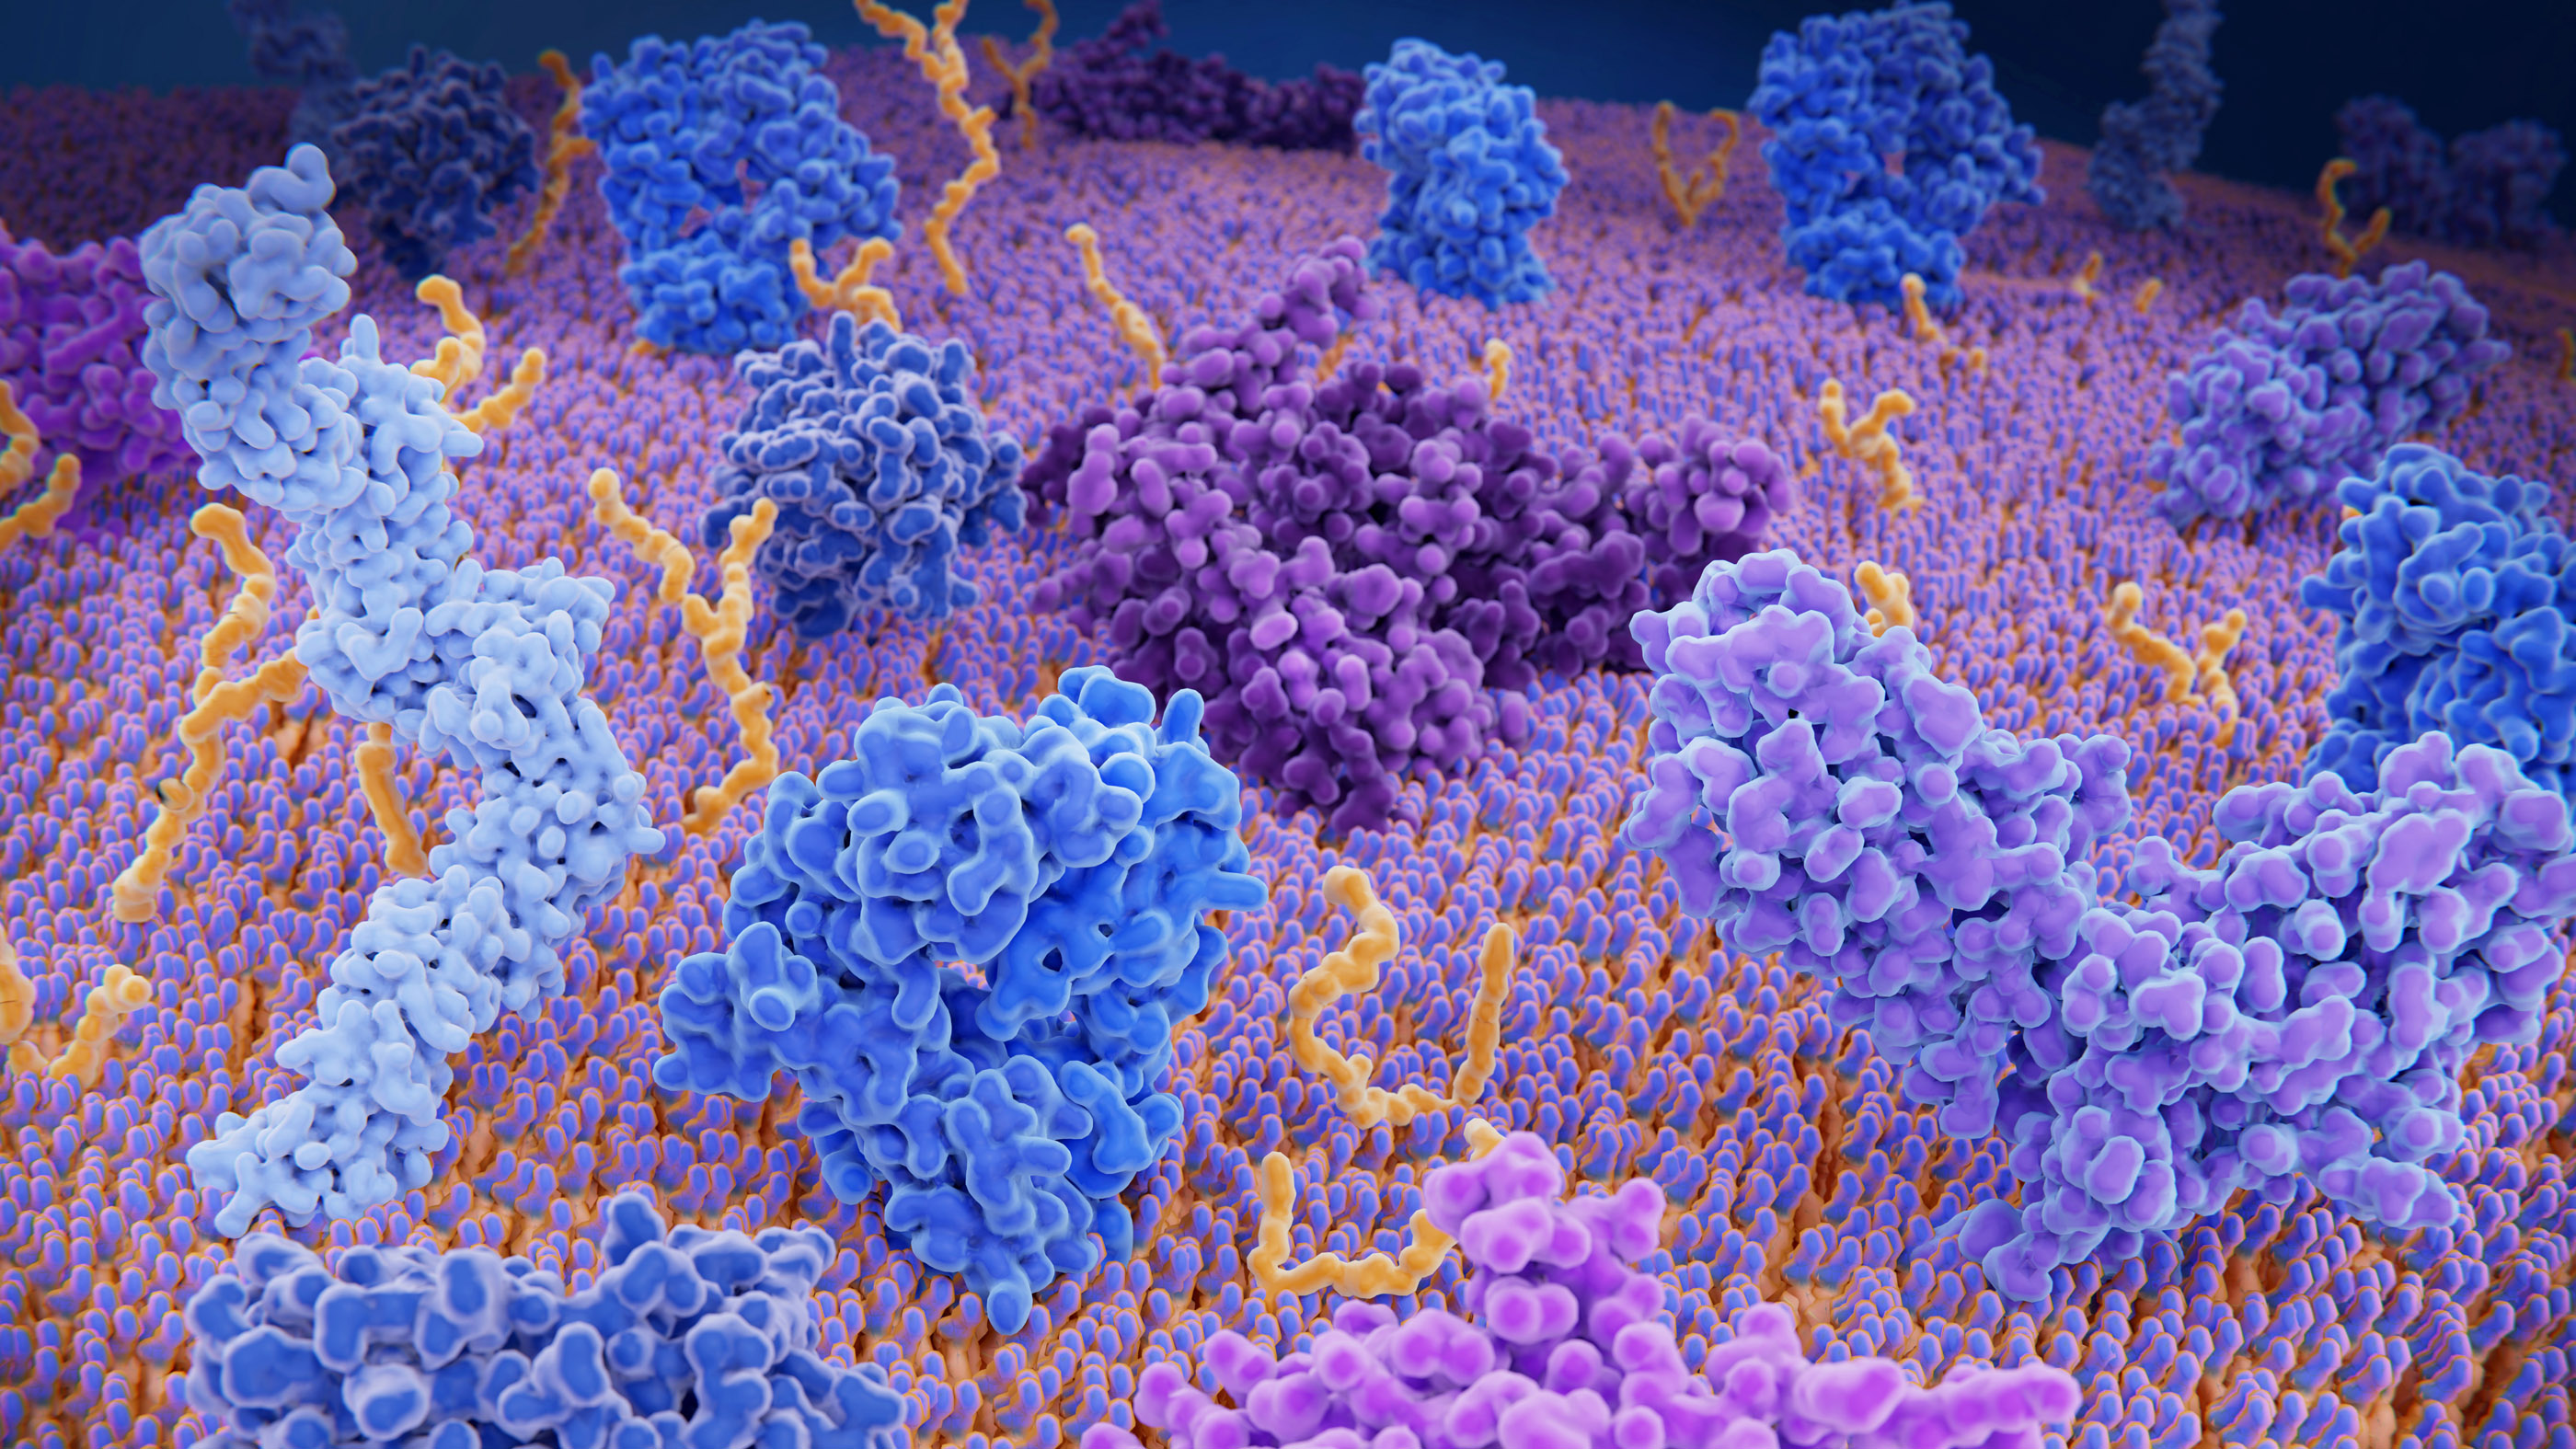 Las proteínas son estructuras complejas en el cuerpo.  Aquí, las manchas retorcidas y de colores brillantes representan diferentes proteínas del sistema inmunitario en la capa externa de una célula T, un tipo de glóbulo blanco que ayuda al cuerpo a identificar a los invasores extraños.